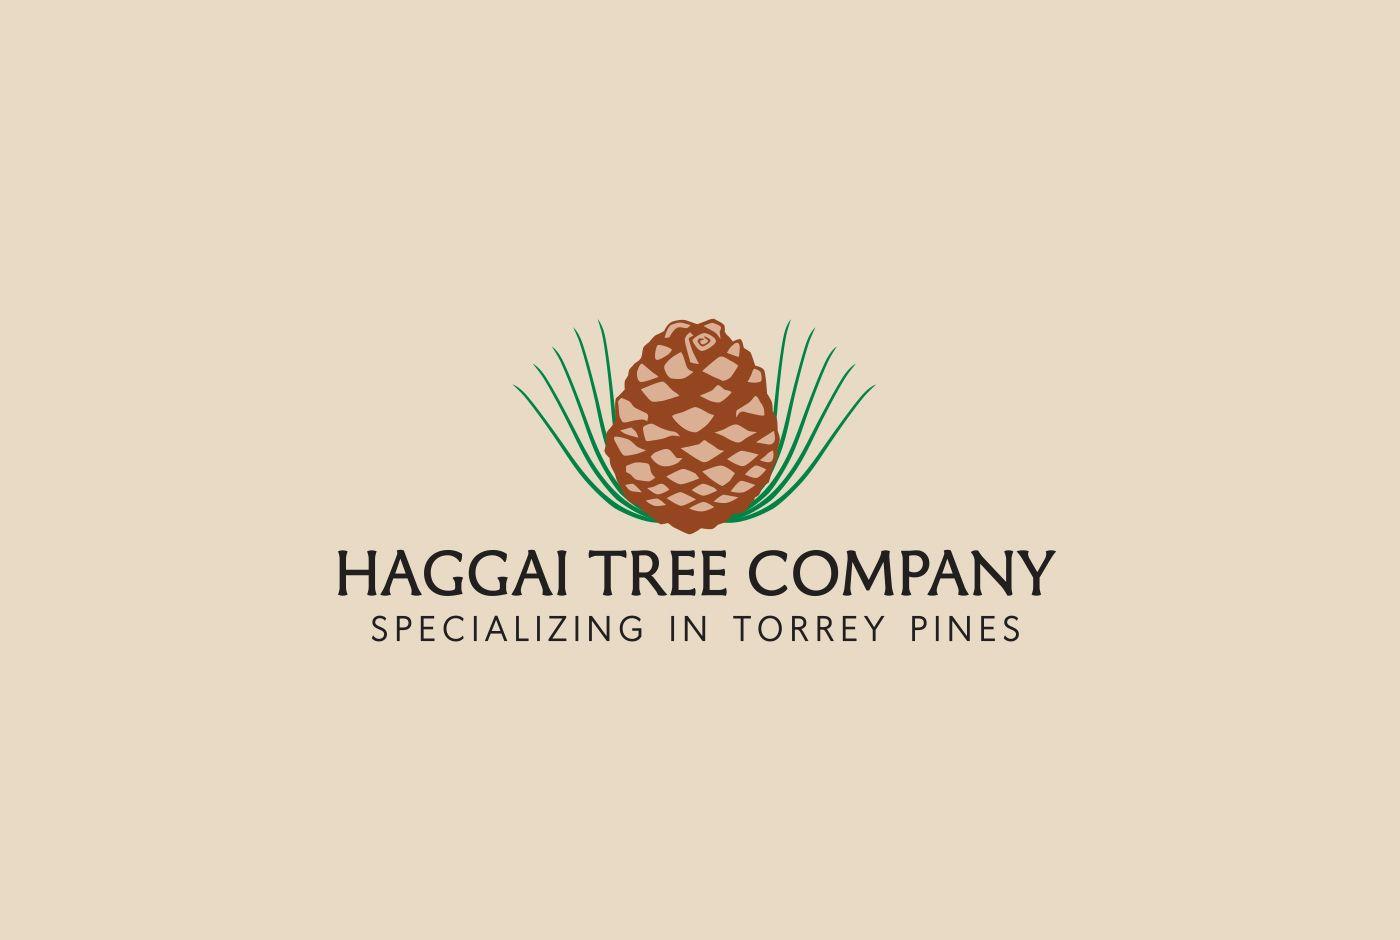 Pine Tree Company Logo - Haggai Tree Company logo on Behance